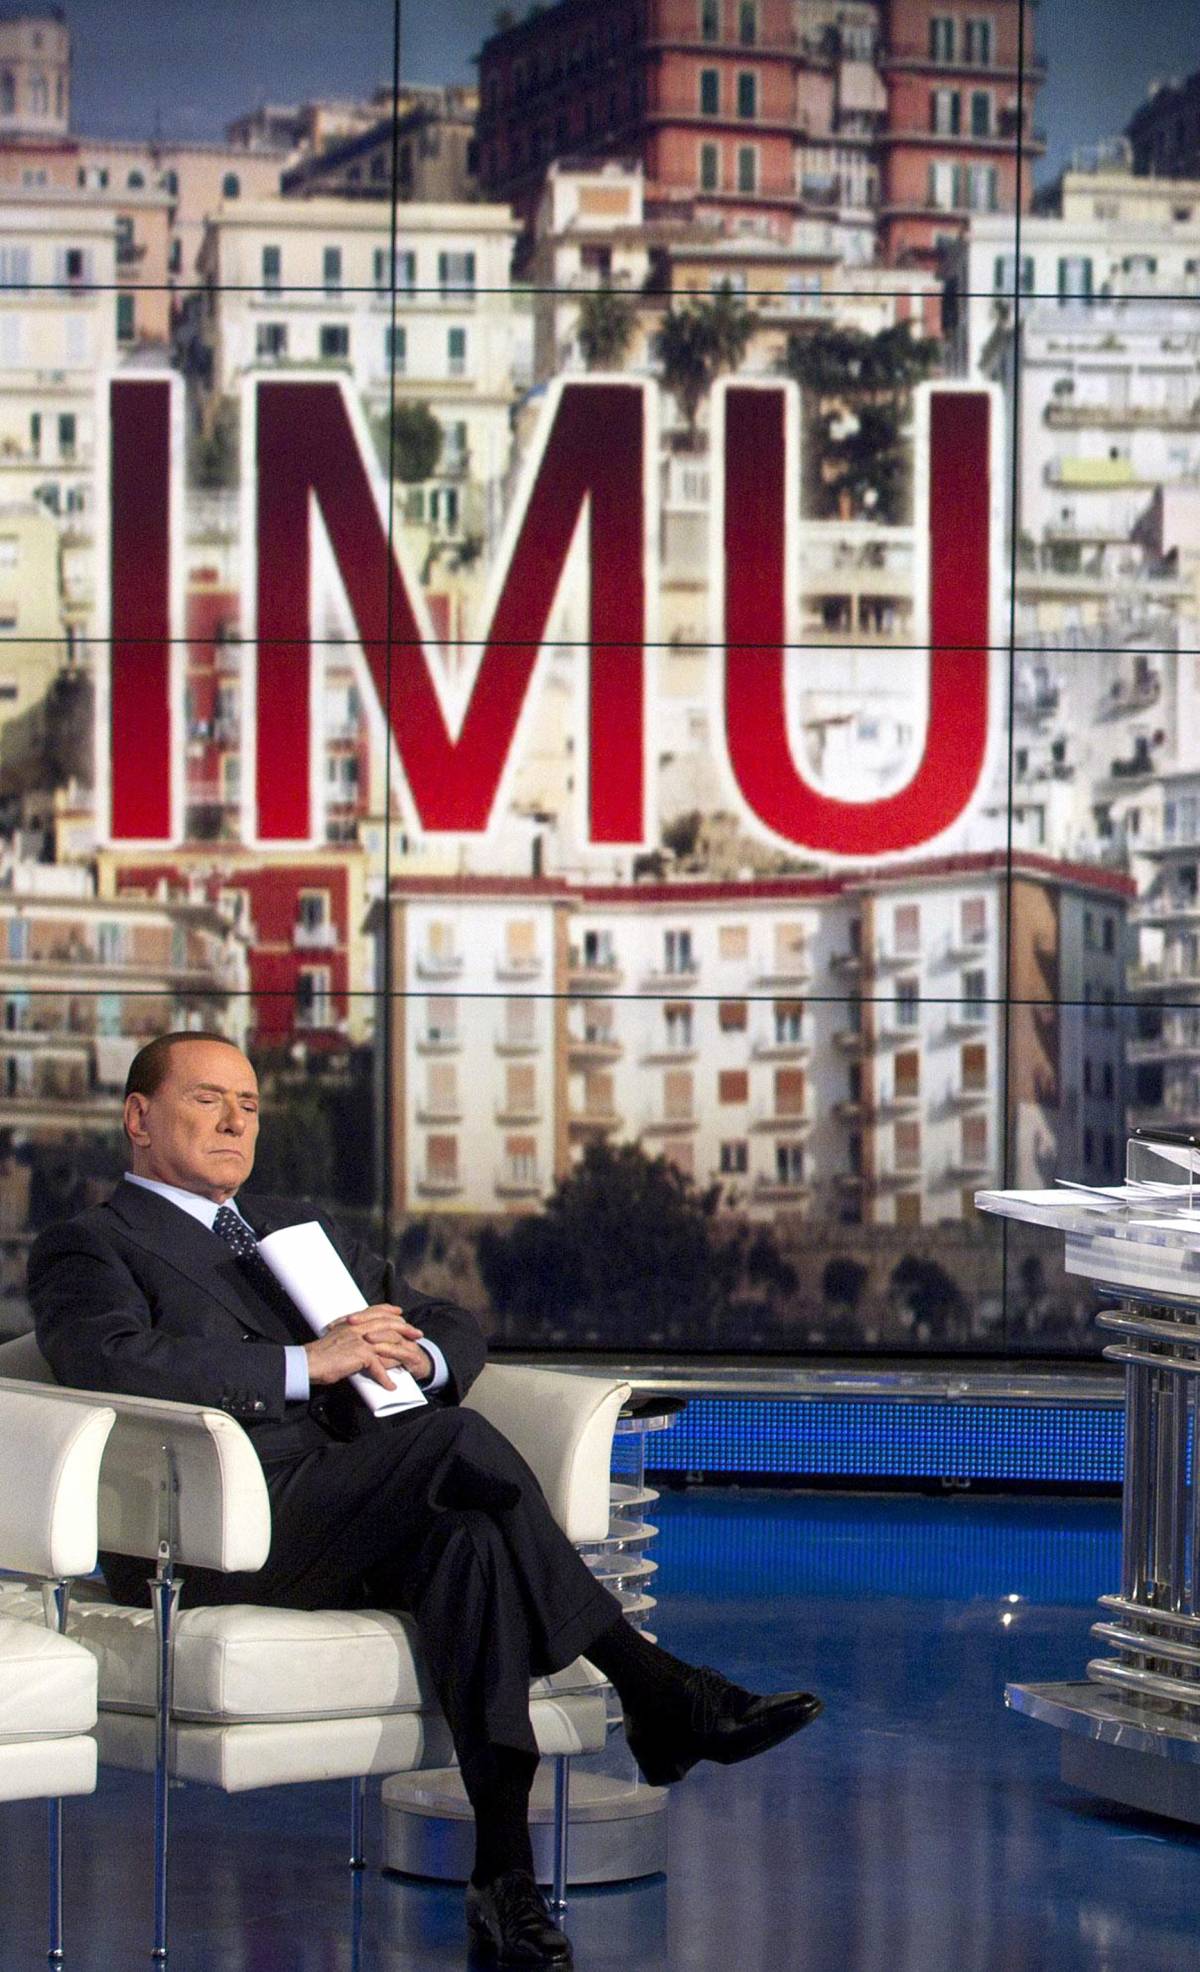 Unipol, ennesimo teorema per eliminare Berlusconi